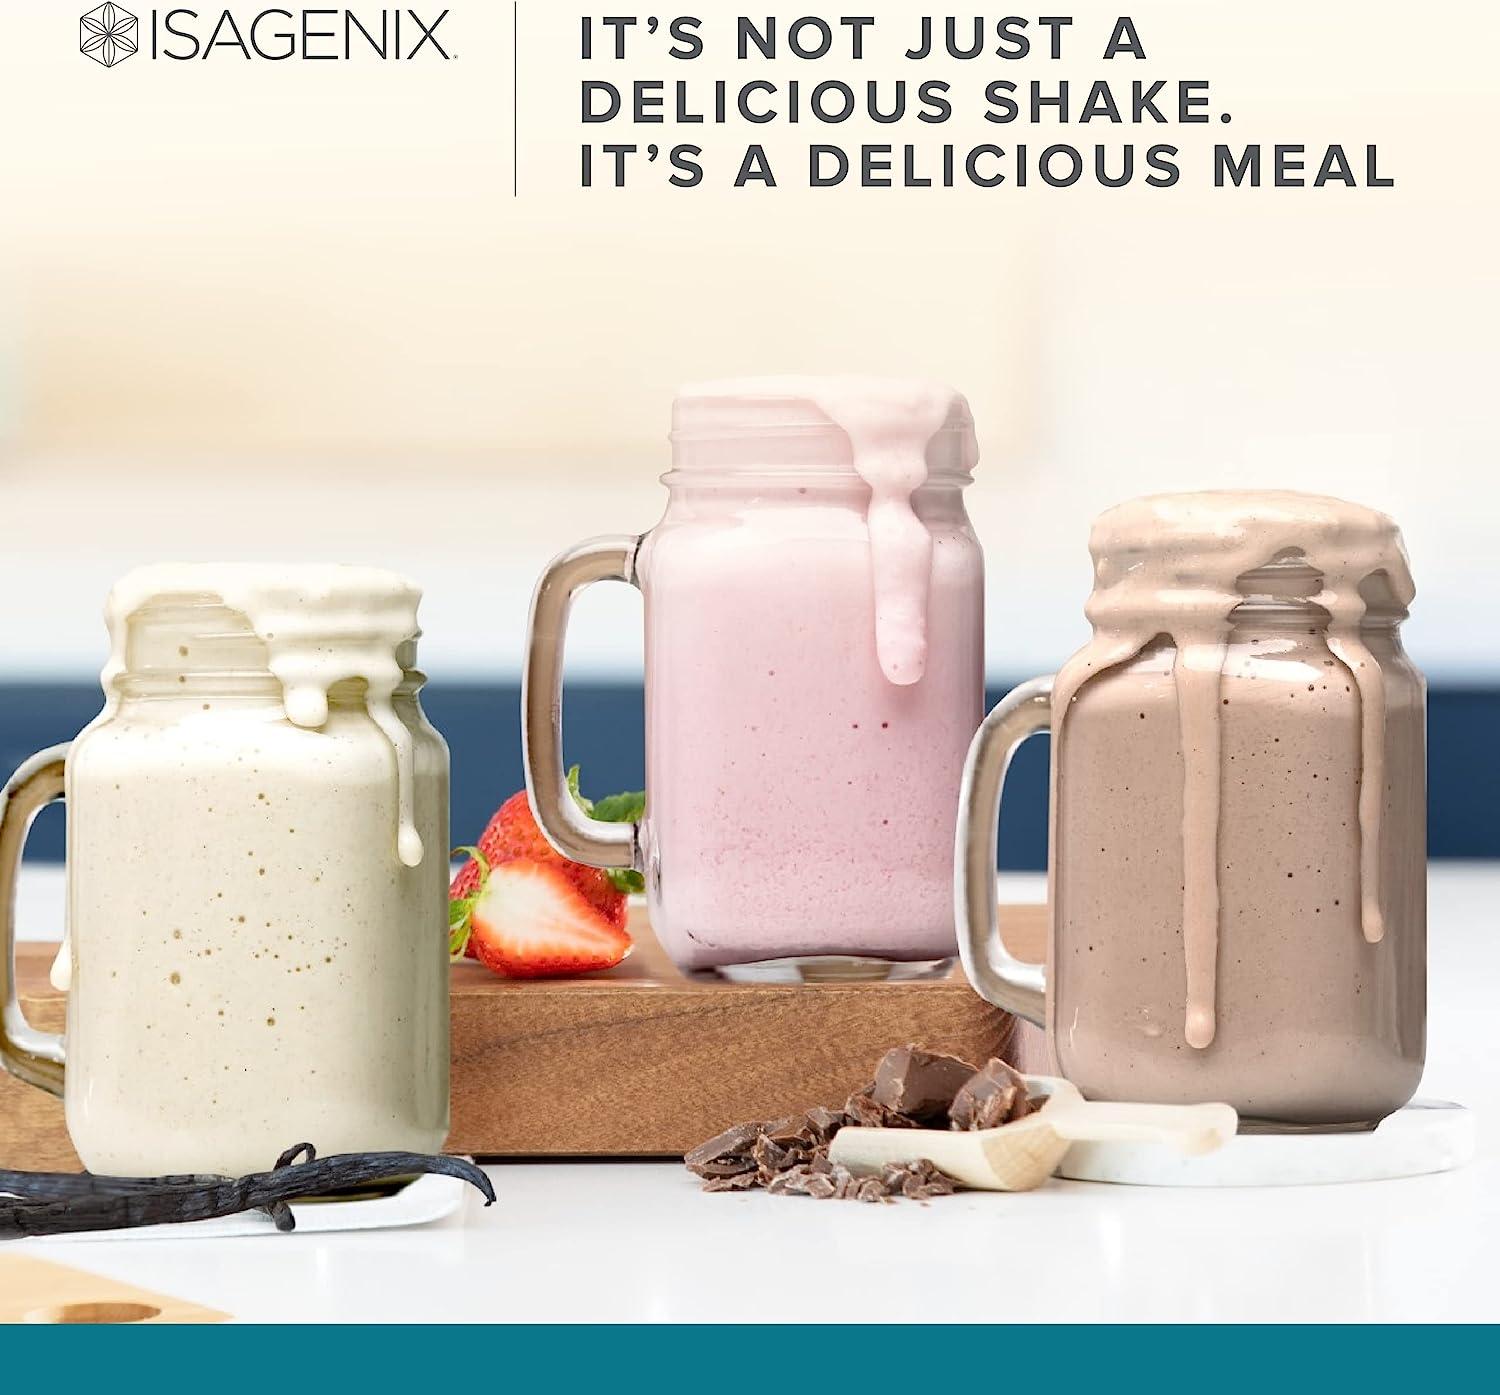 50 Isagenix Shake Recipes - Best Isagenix Shake Recipes  Isagenix shake  recipes, Isagenix shakes, Isagenix diet